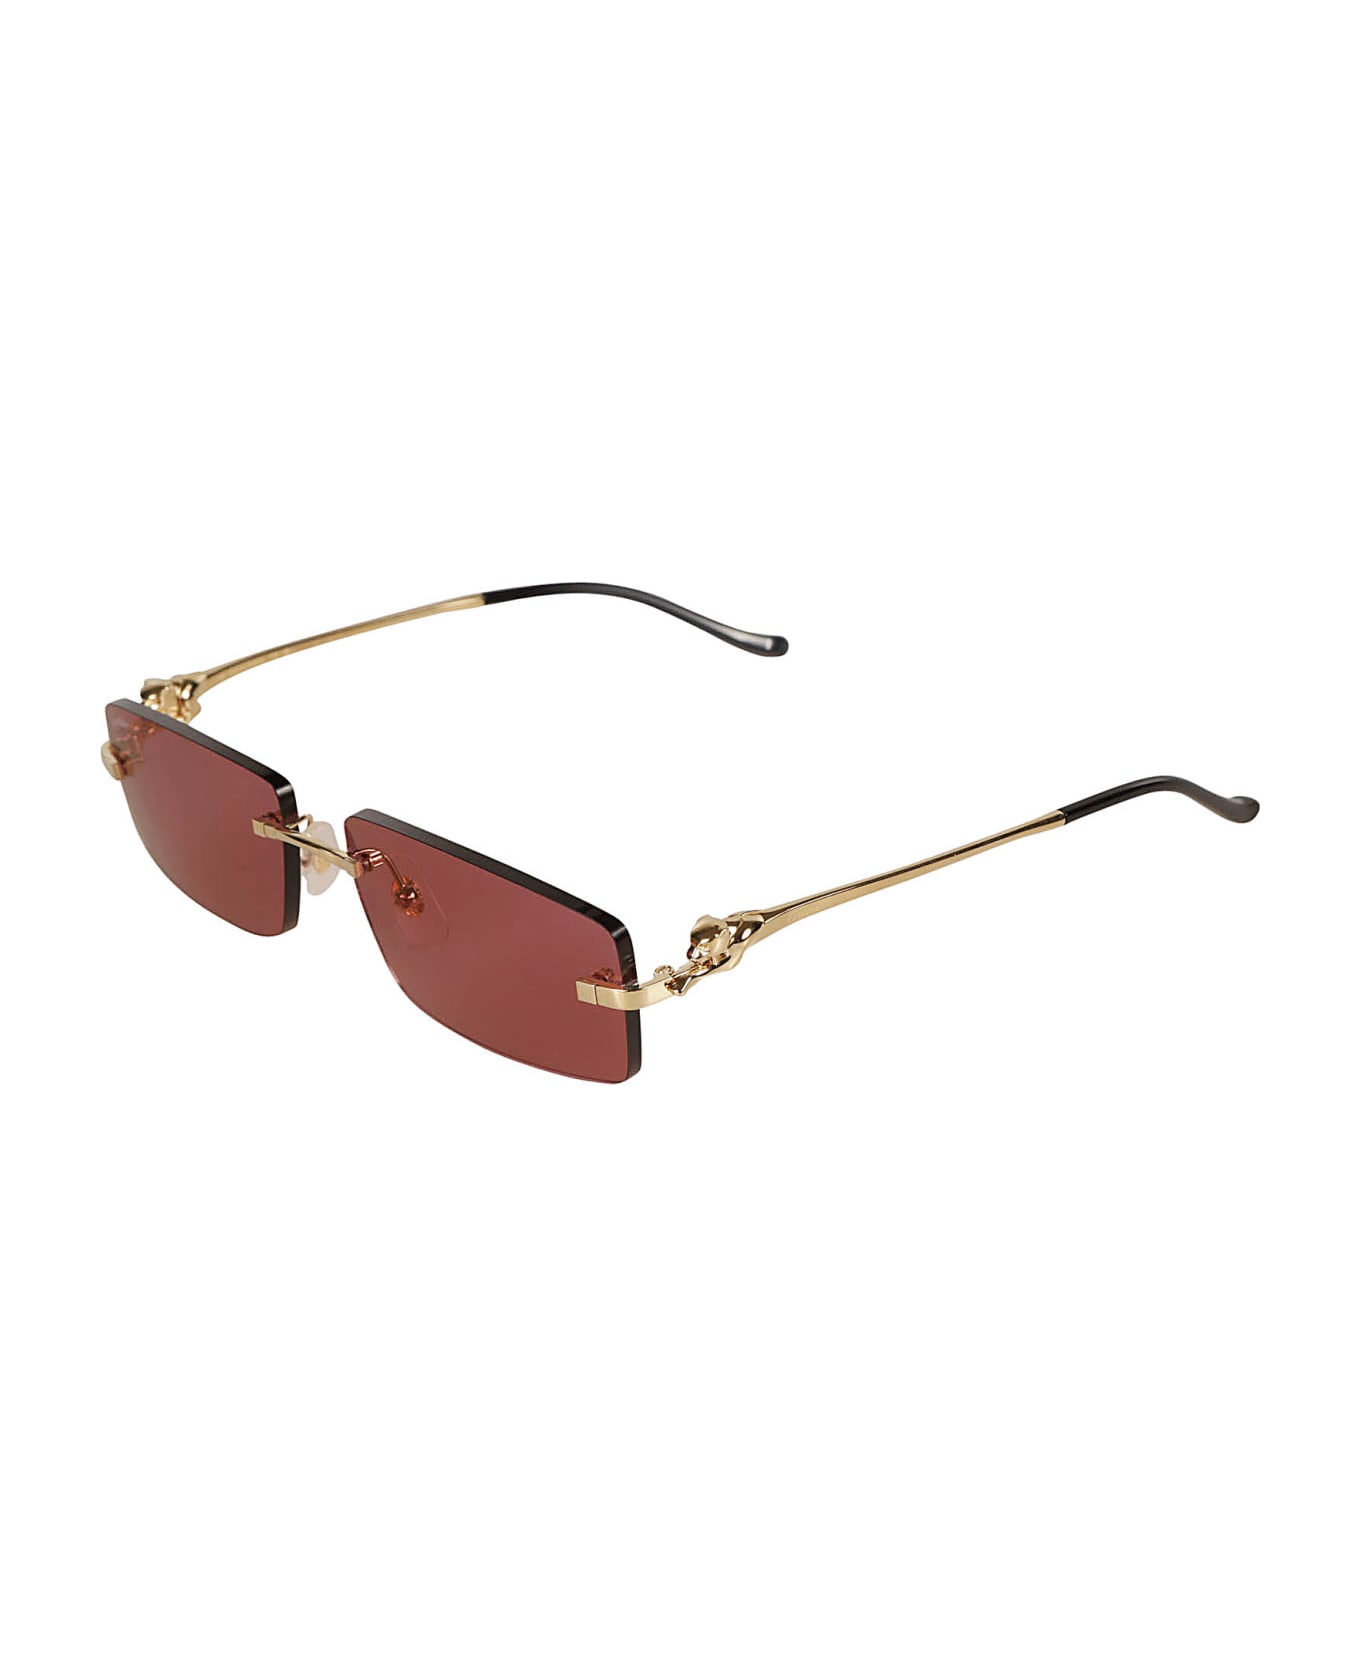 Cartier Eyewear Rectangular Long Sunglasses Sunglasses - Gold/Red